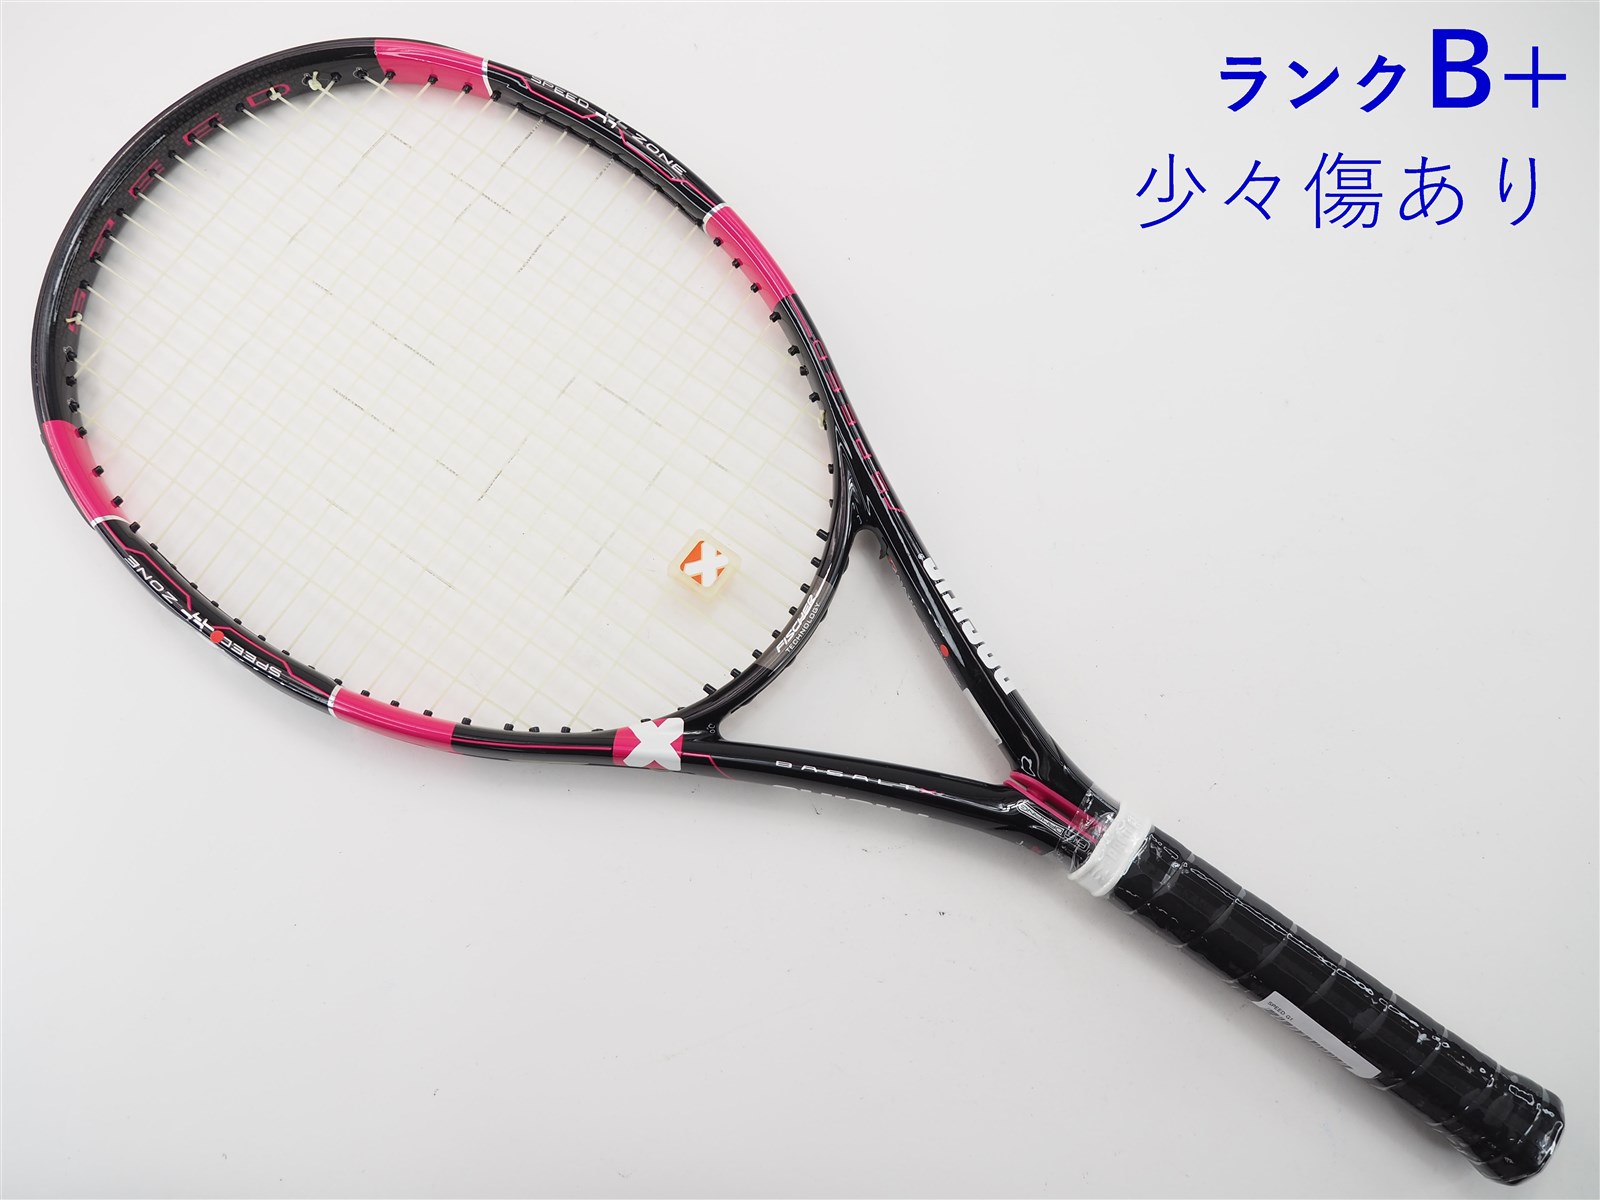 テニスラケット パシフィック スピード (G2)PACIFIC SPEED | mituti.com.br